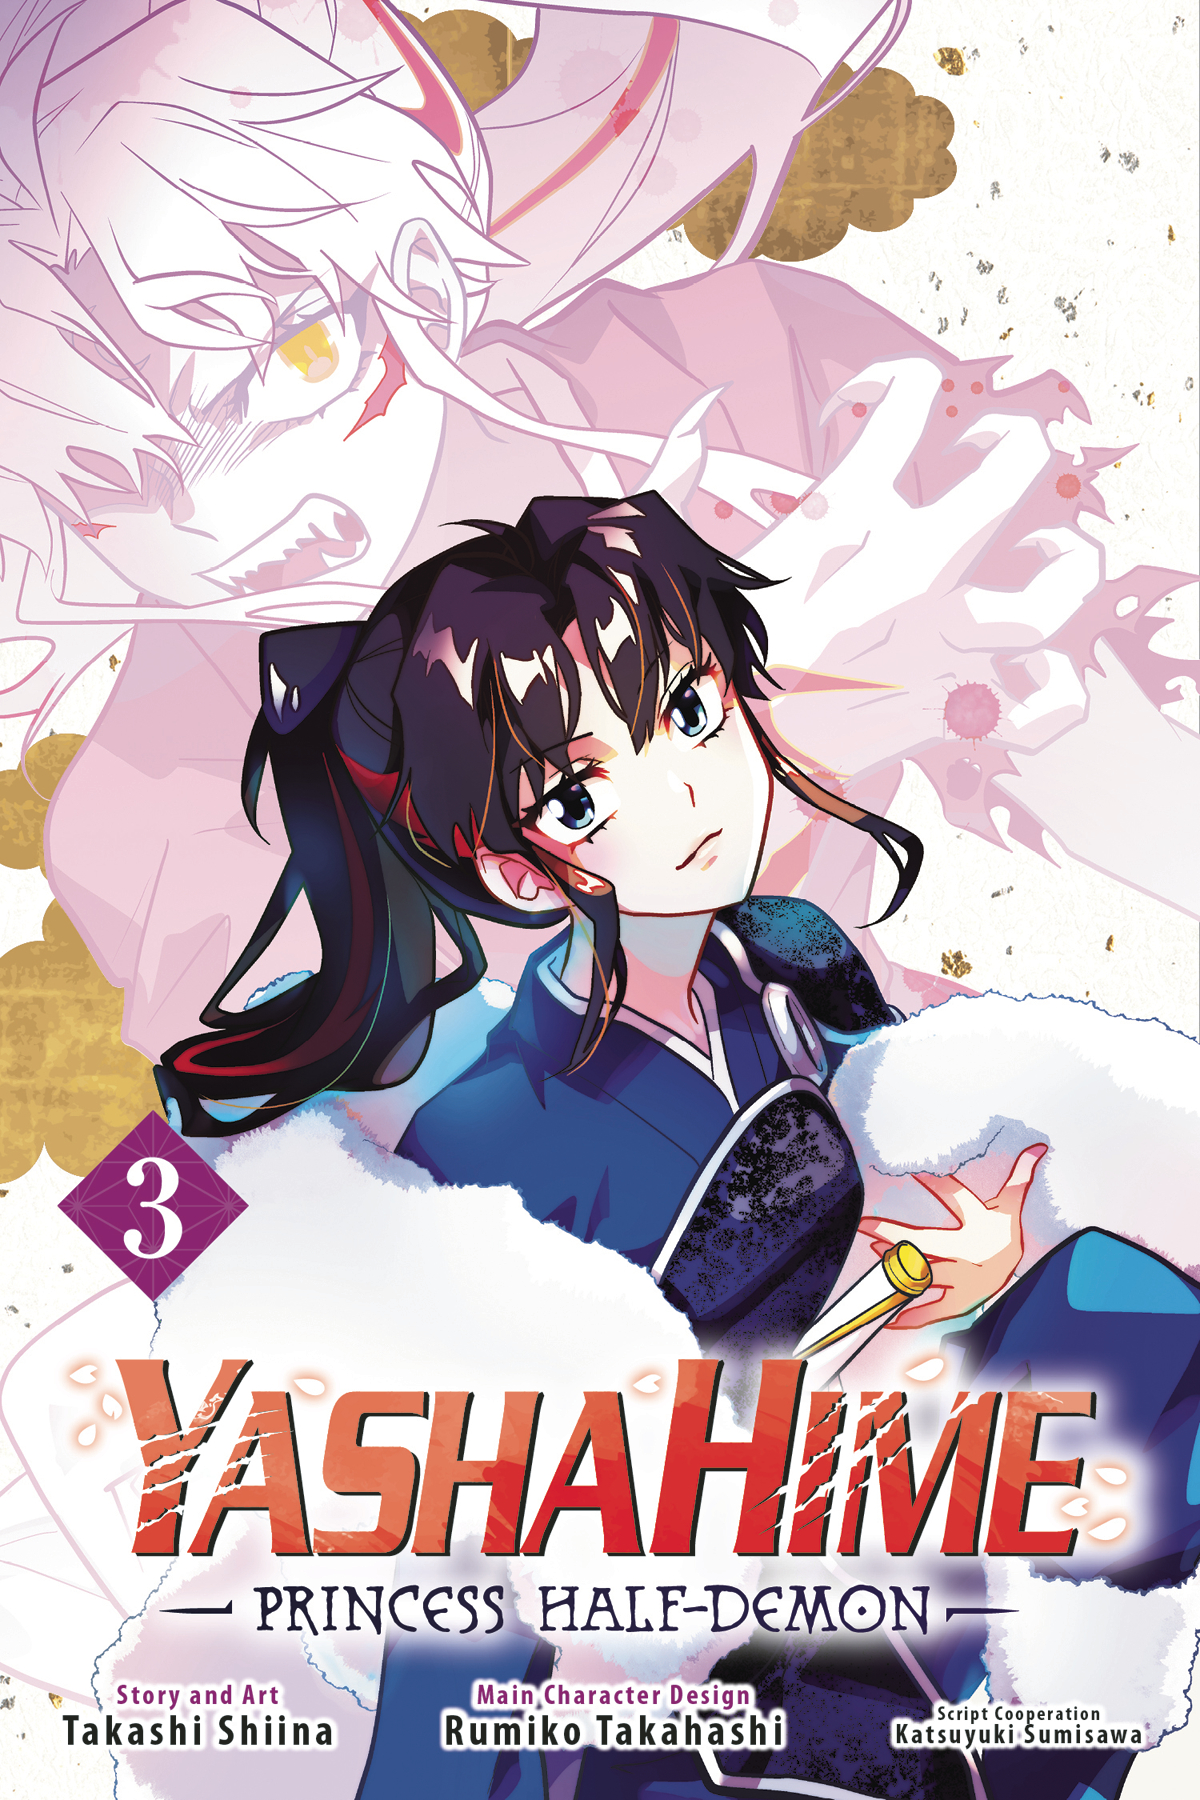 Yashahime Princess Half Demon Manga Volume 3